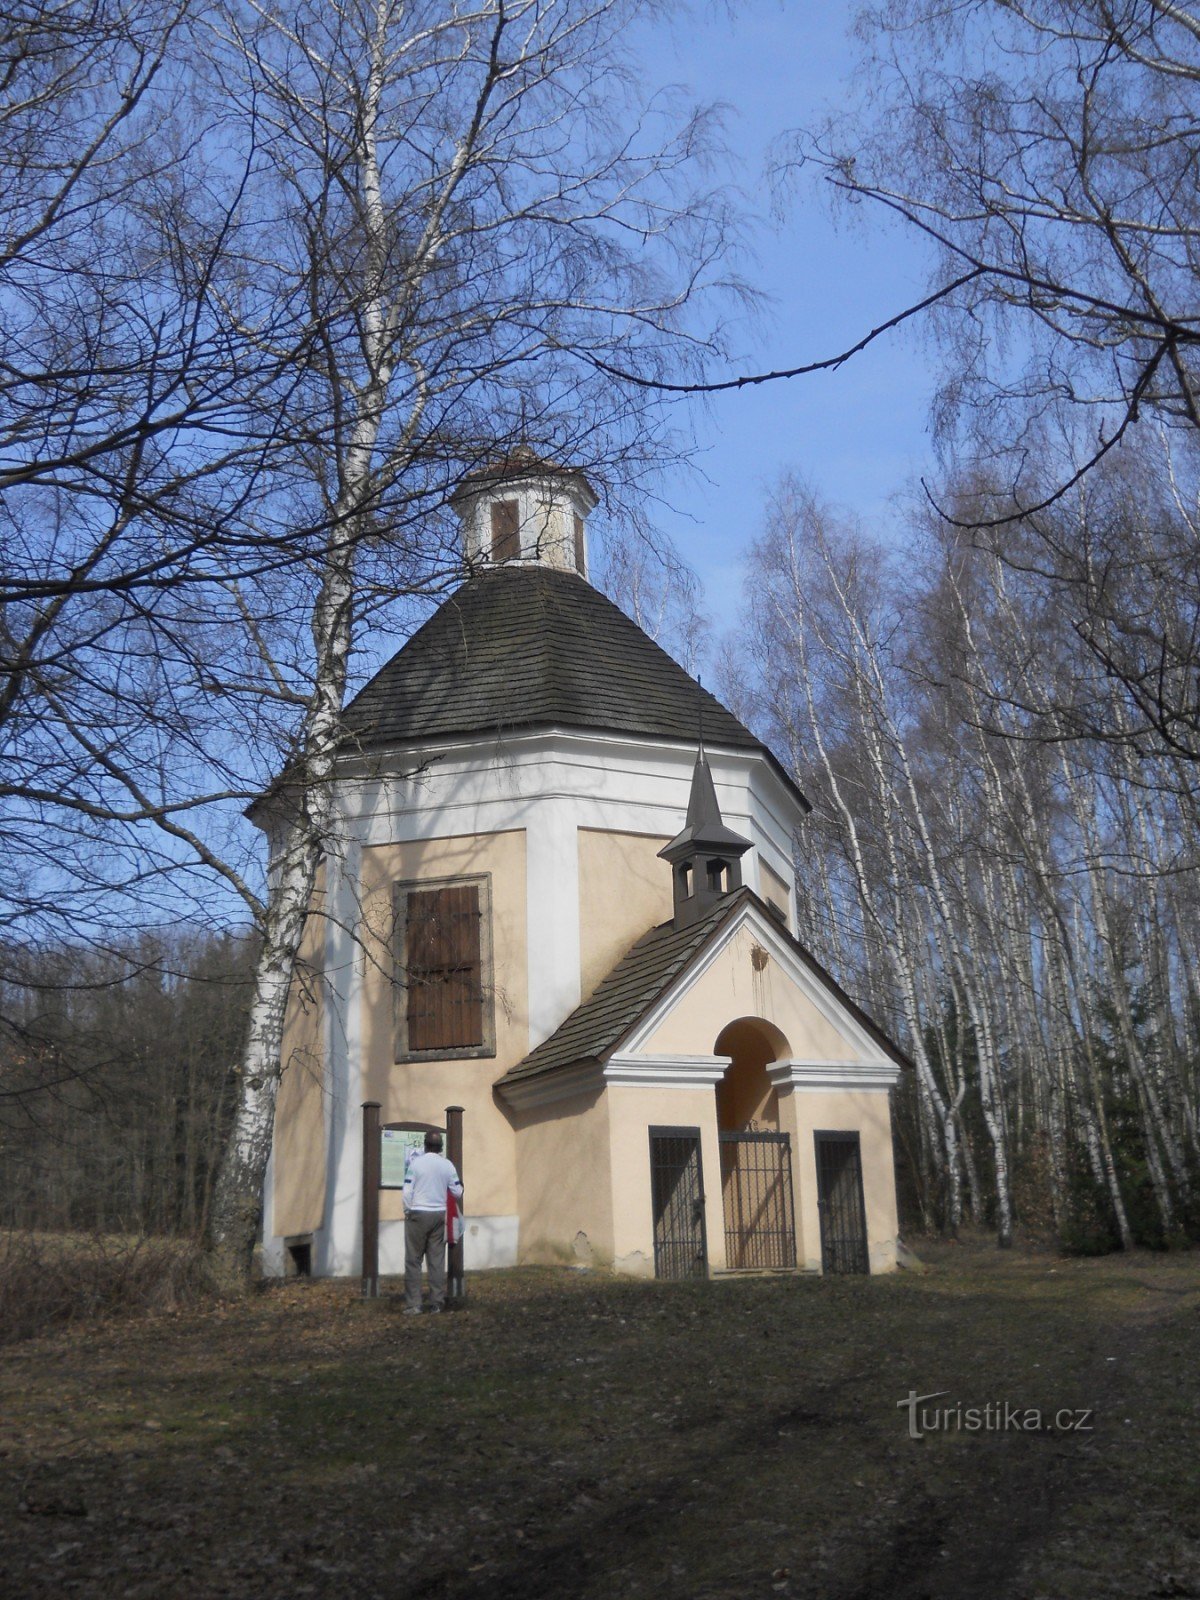 Chapel of St. Karel Boromejský near Telč